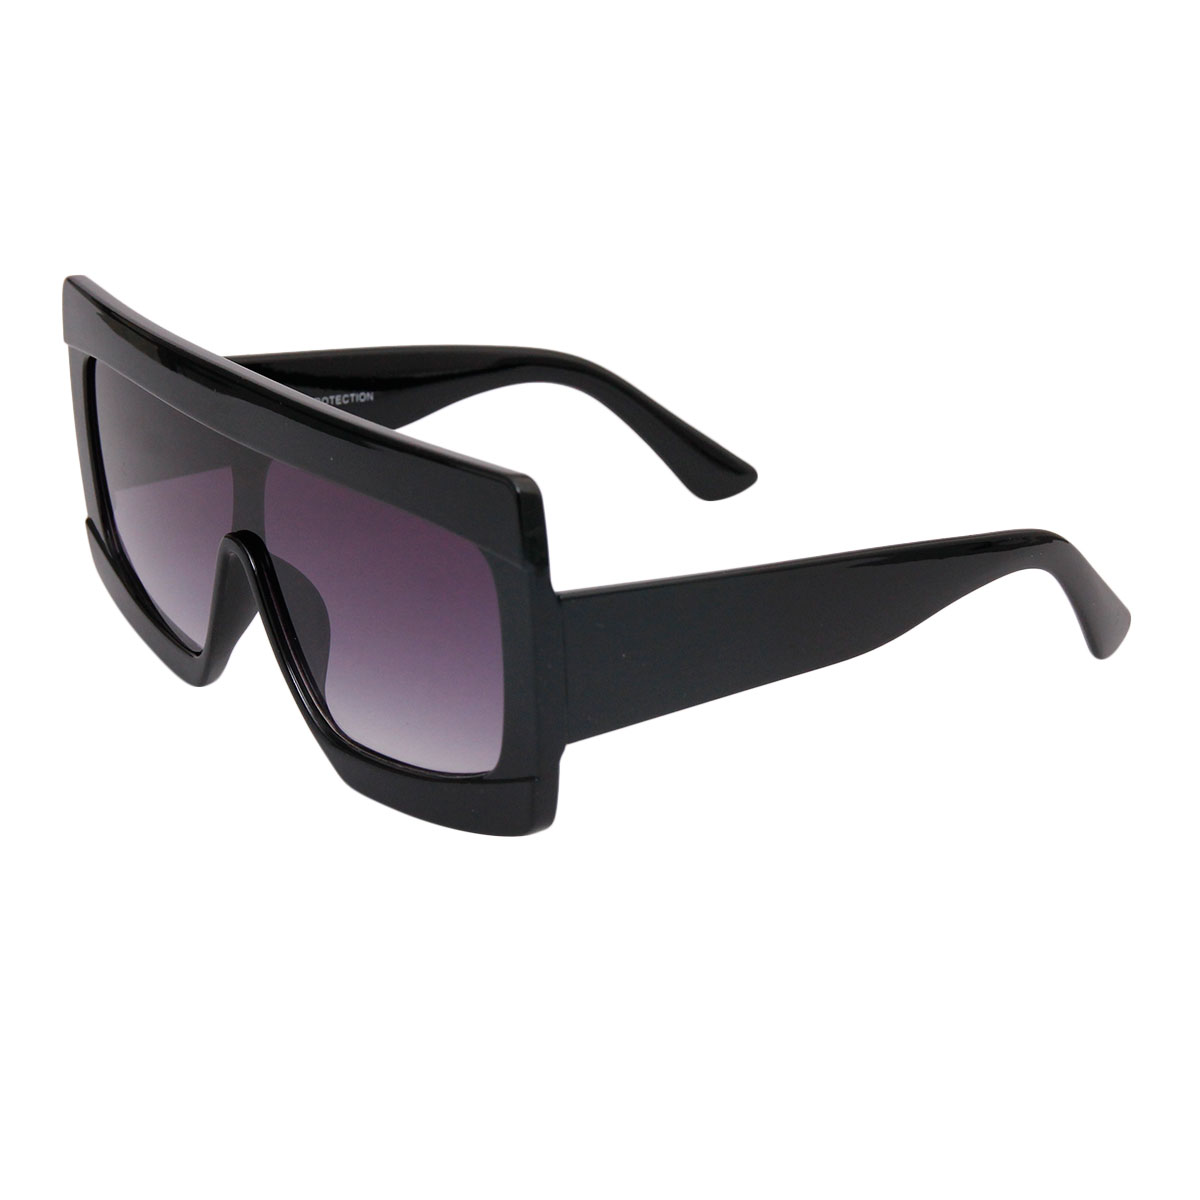 Black Celine Style Modern Visor Sunglasses